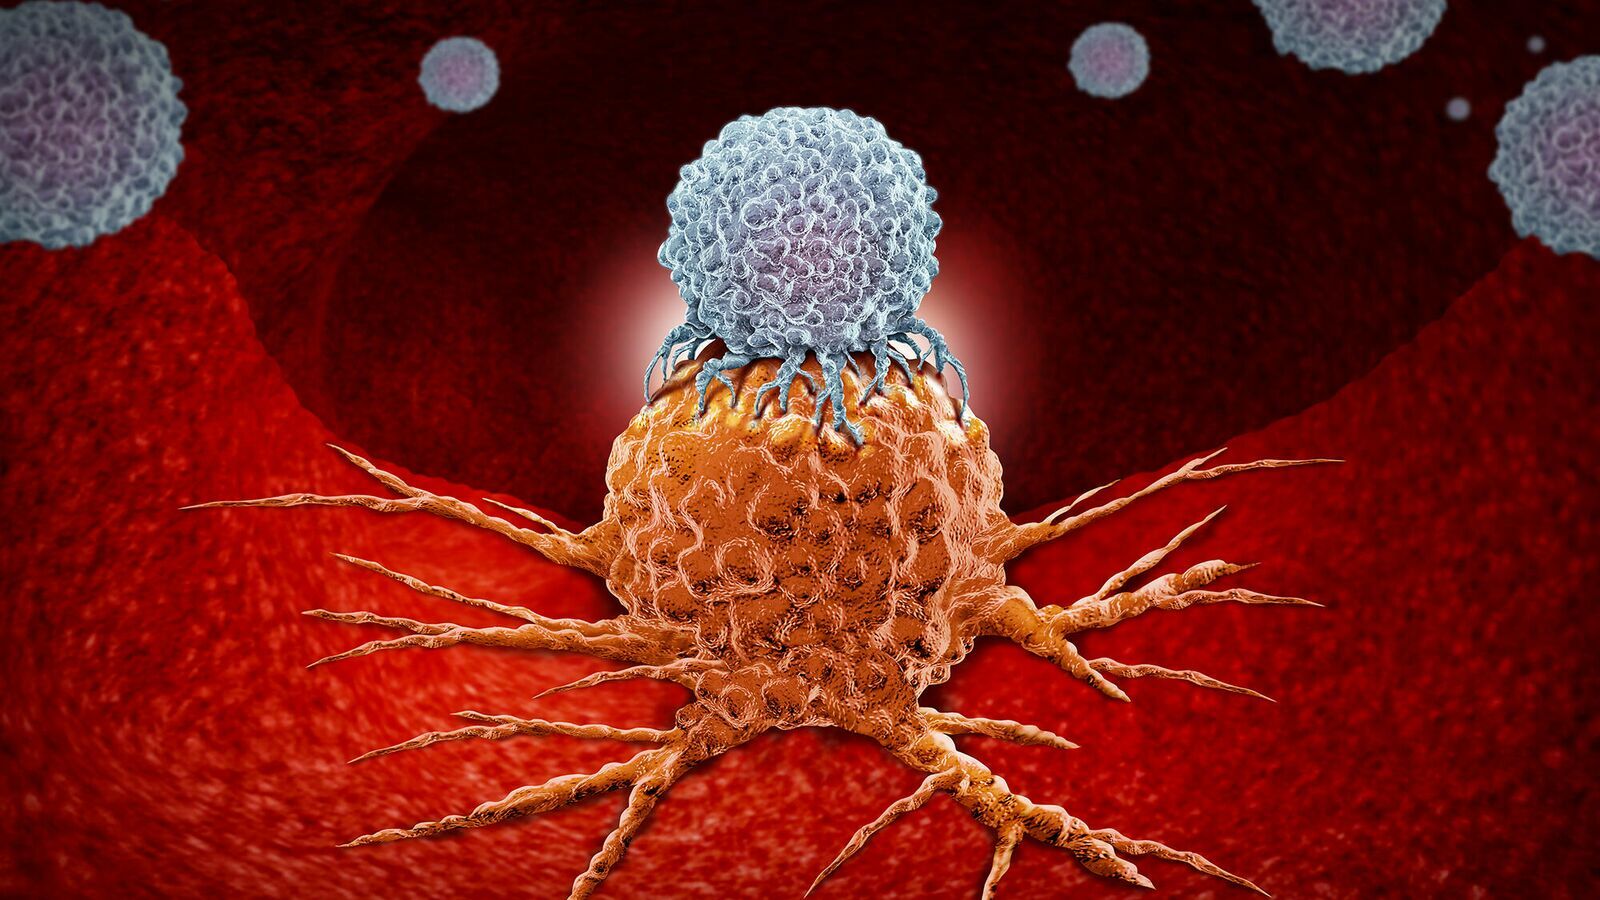 Электронный журнал «Наука и технологии» | Вирус против рака